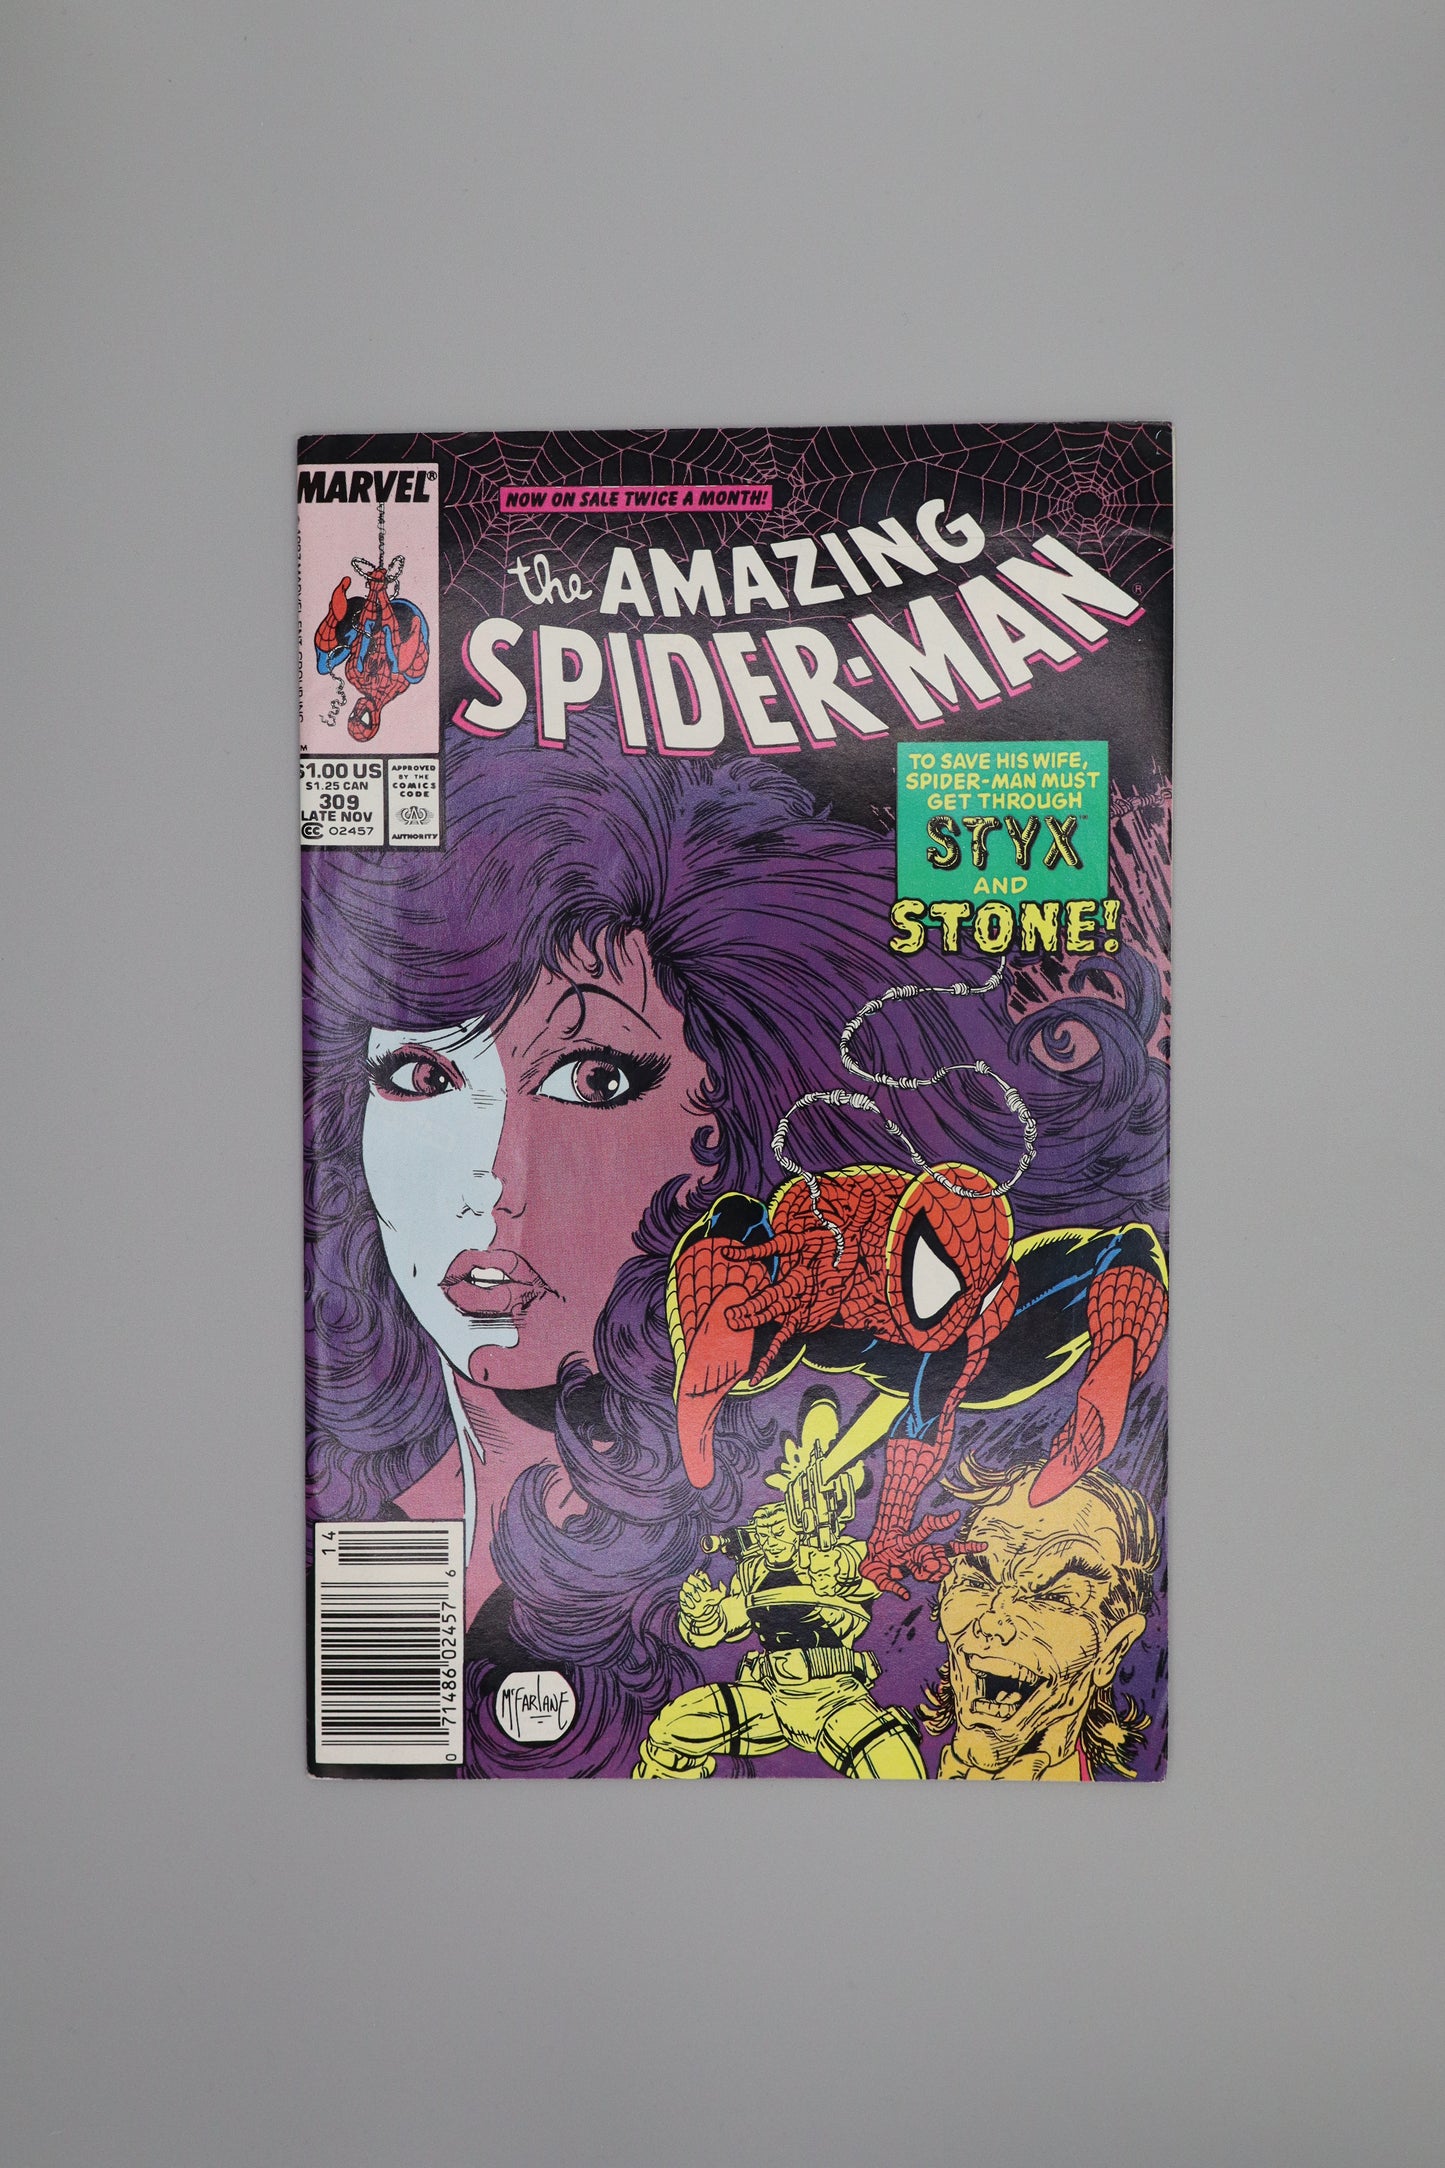 The Amazing Spider-man #309 Newsstand